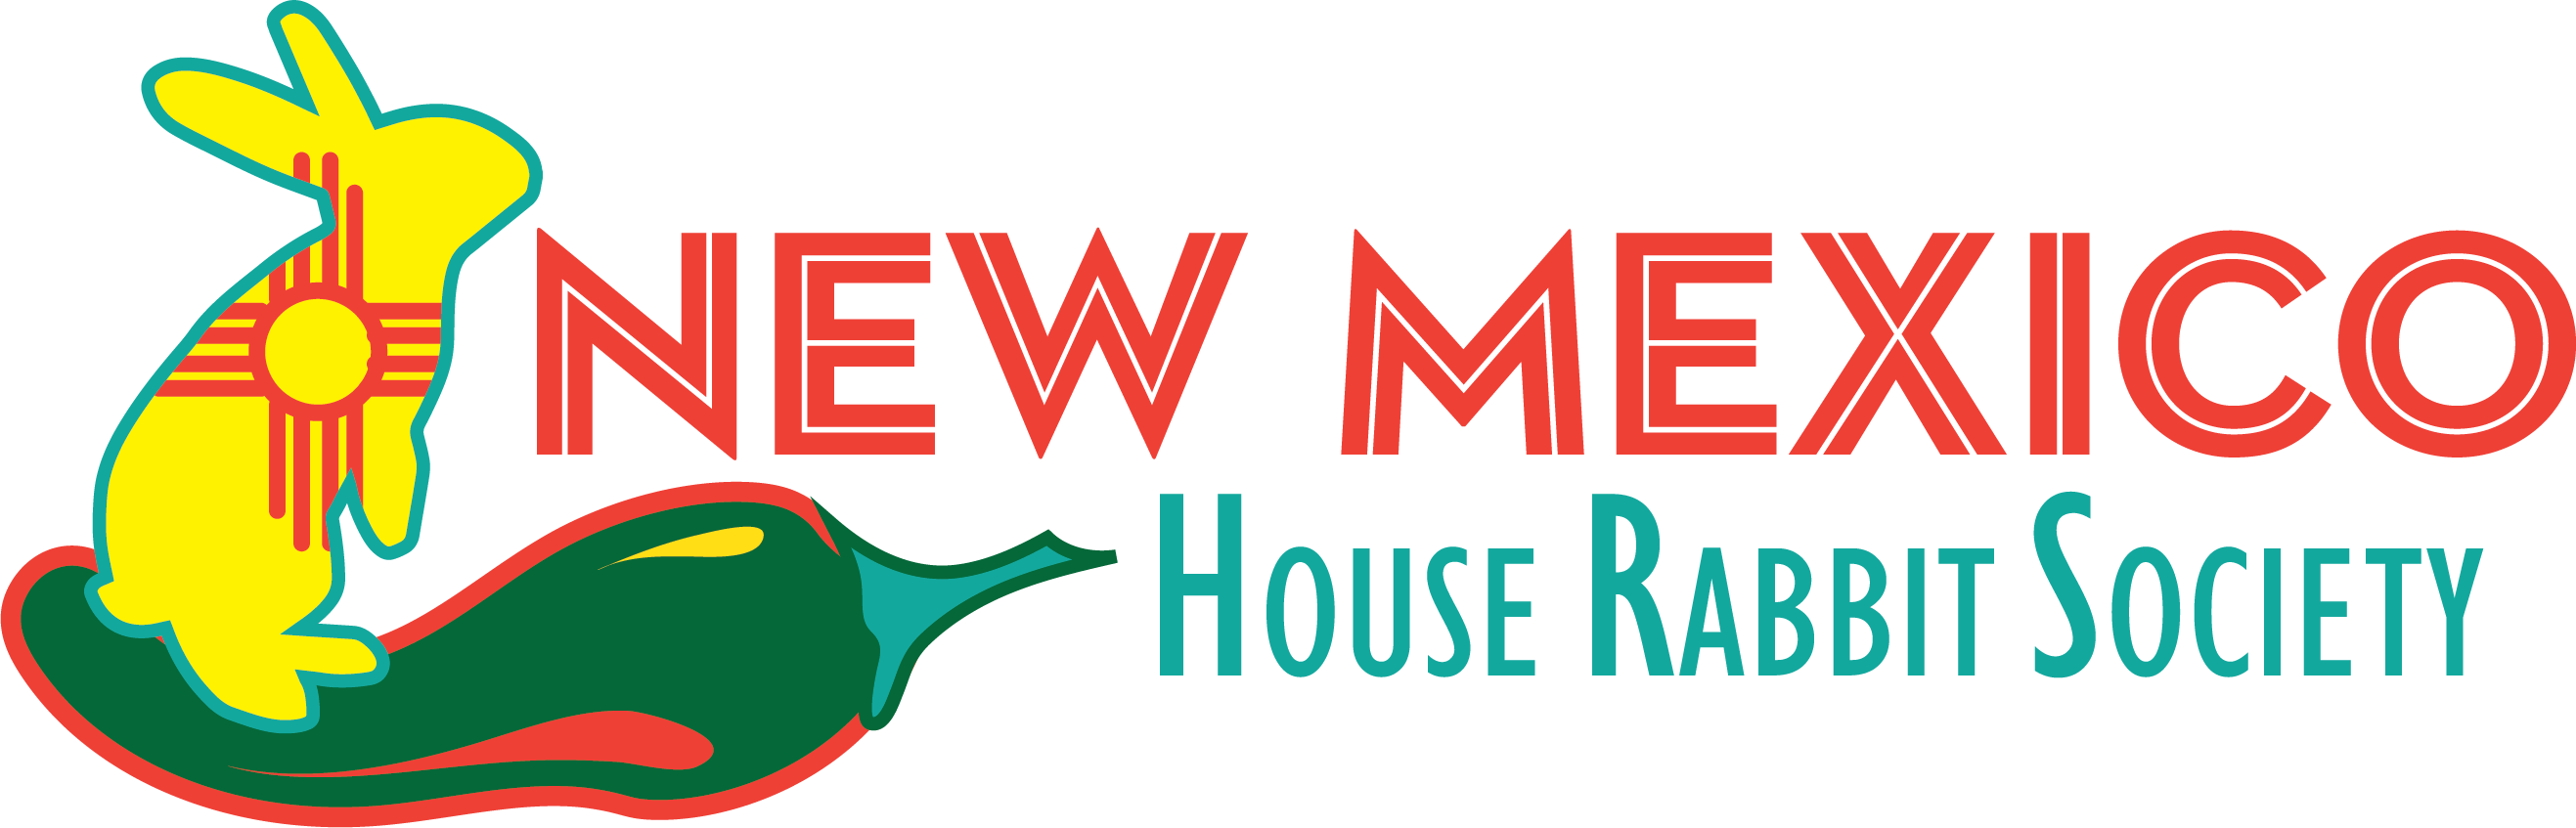 New Mexico House Rabbit Society